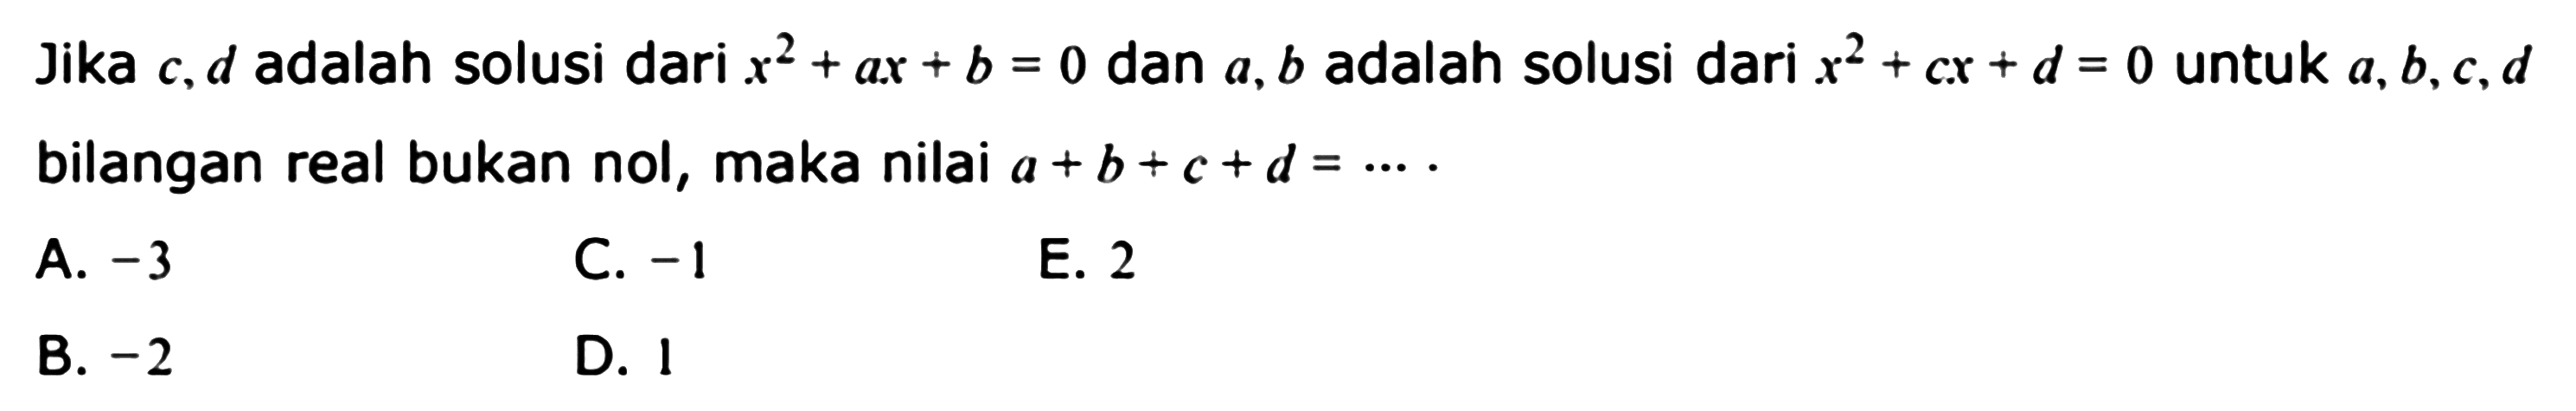 Jika c, d adalah solusi dari x^2+ax+b=0 dan a, b adalah solusi dari x^2+cx+d=0 untuk a, b, c, d bilangan real bukan nol, maka nilai a+b+c+d= ...